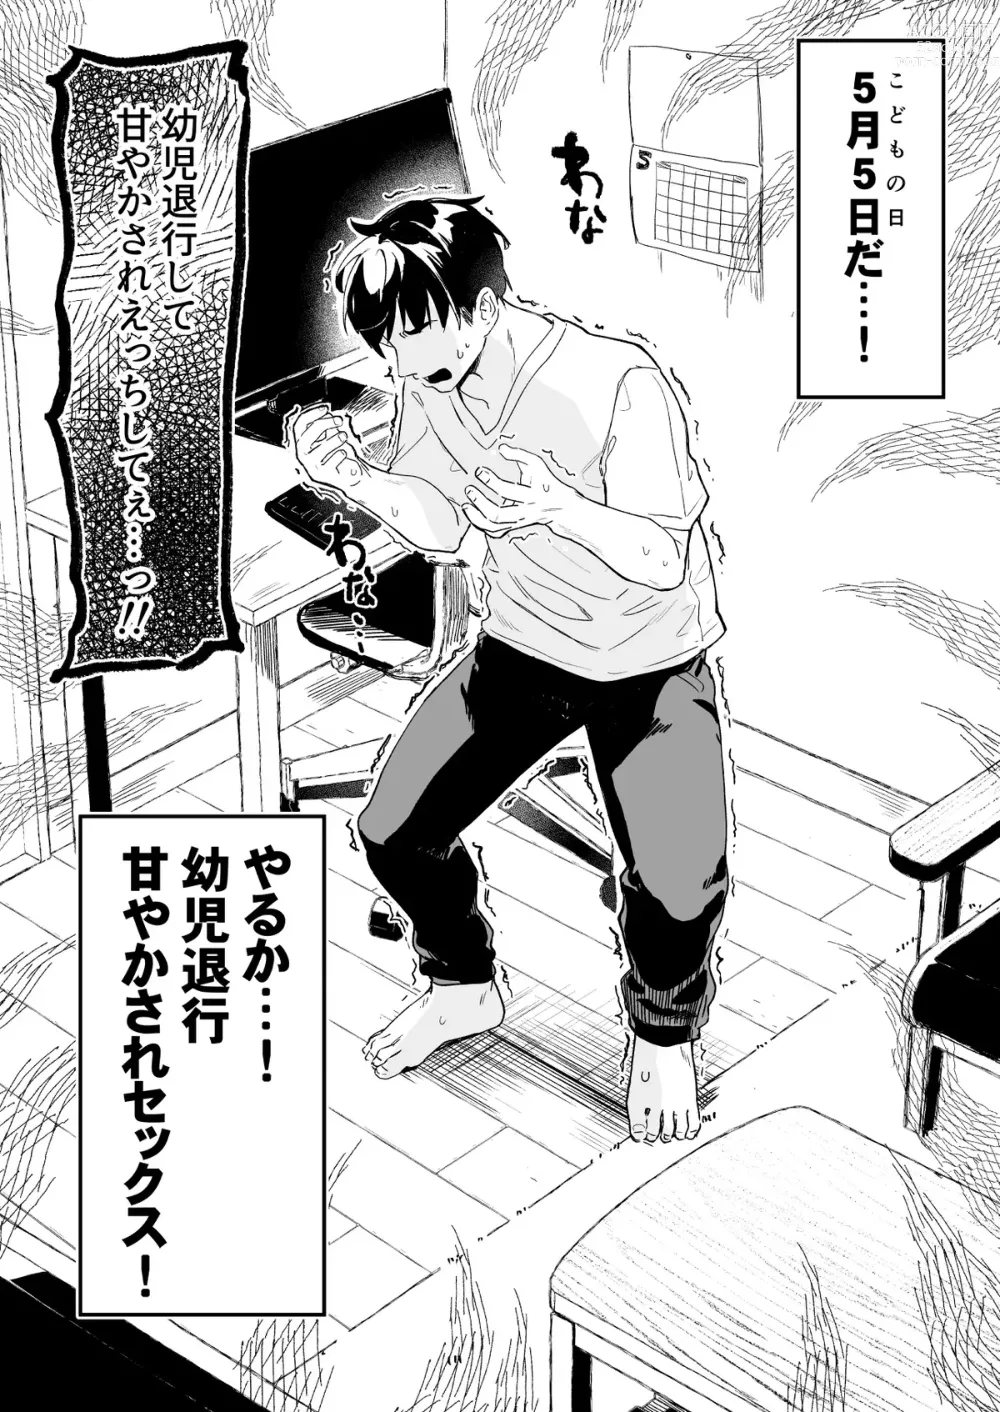 Page 1 of doujinshi Kodomo no Hi (Imishin) ni Mukete Manga o Kaku